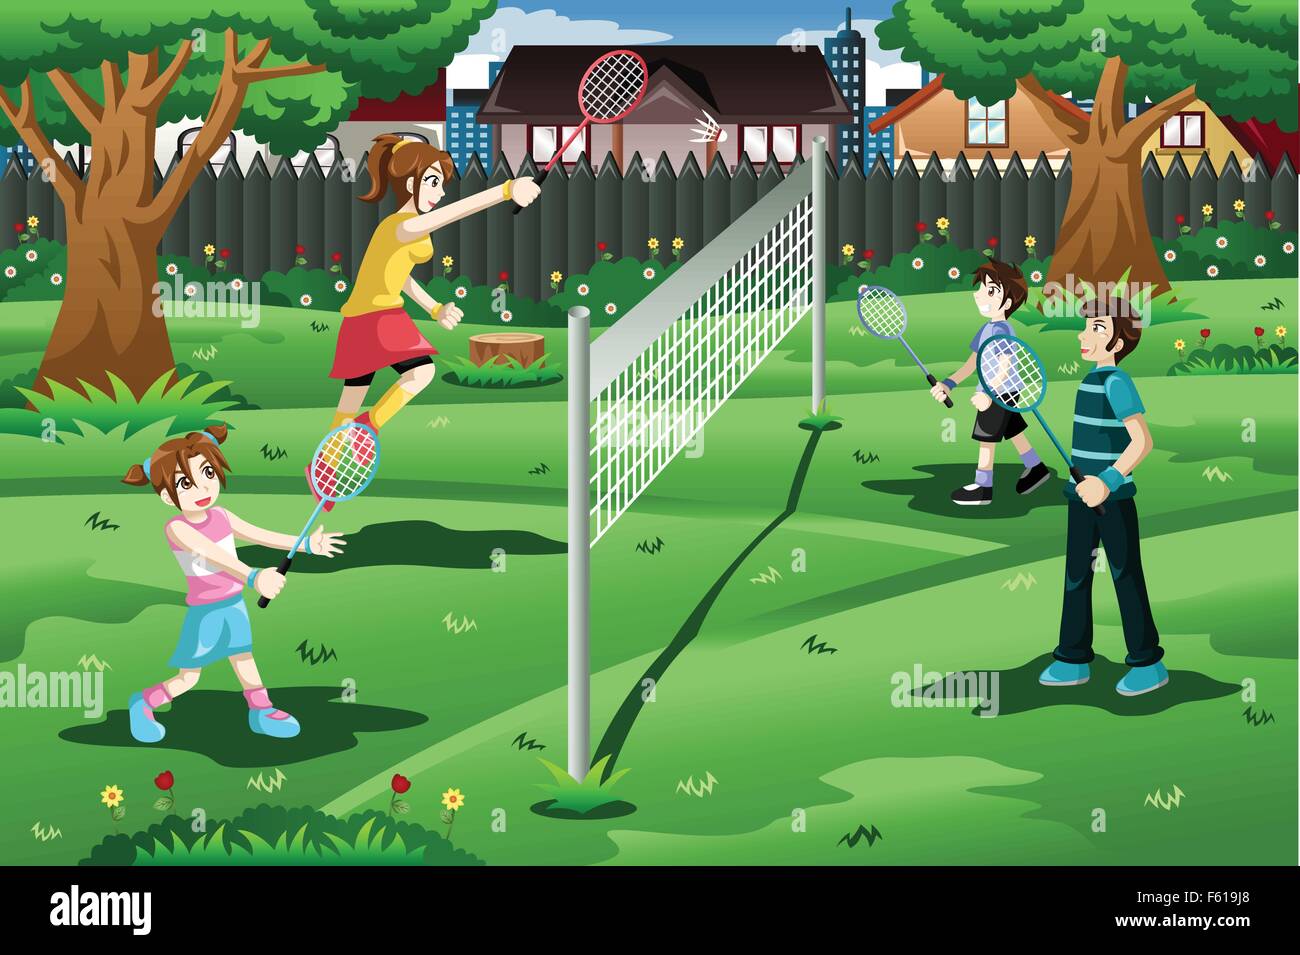 Un vecteur illustration de famille jouer au badminton dans le jardin Illustration de Vecteur